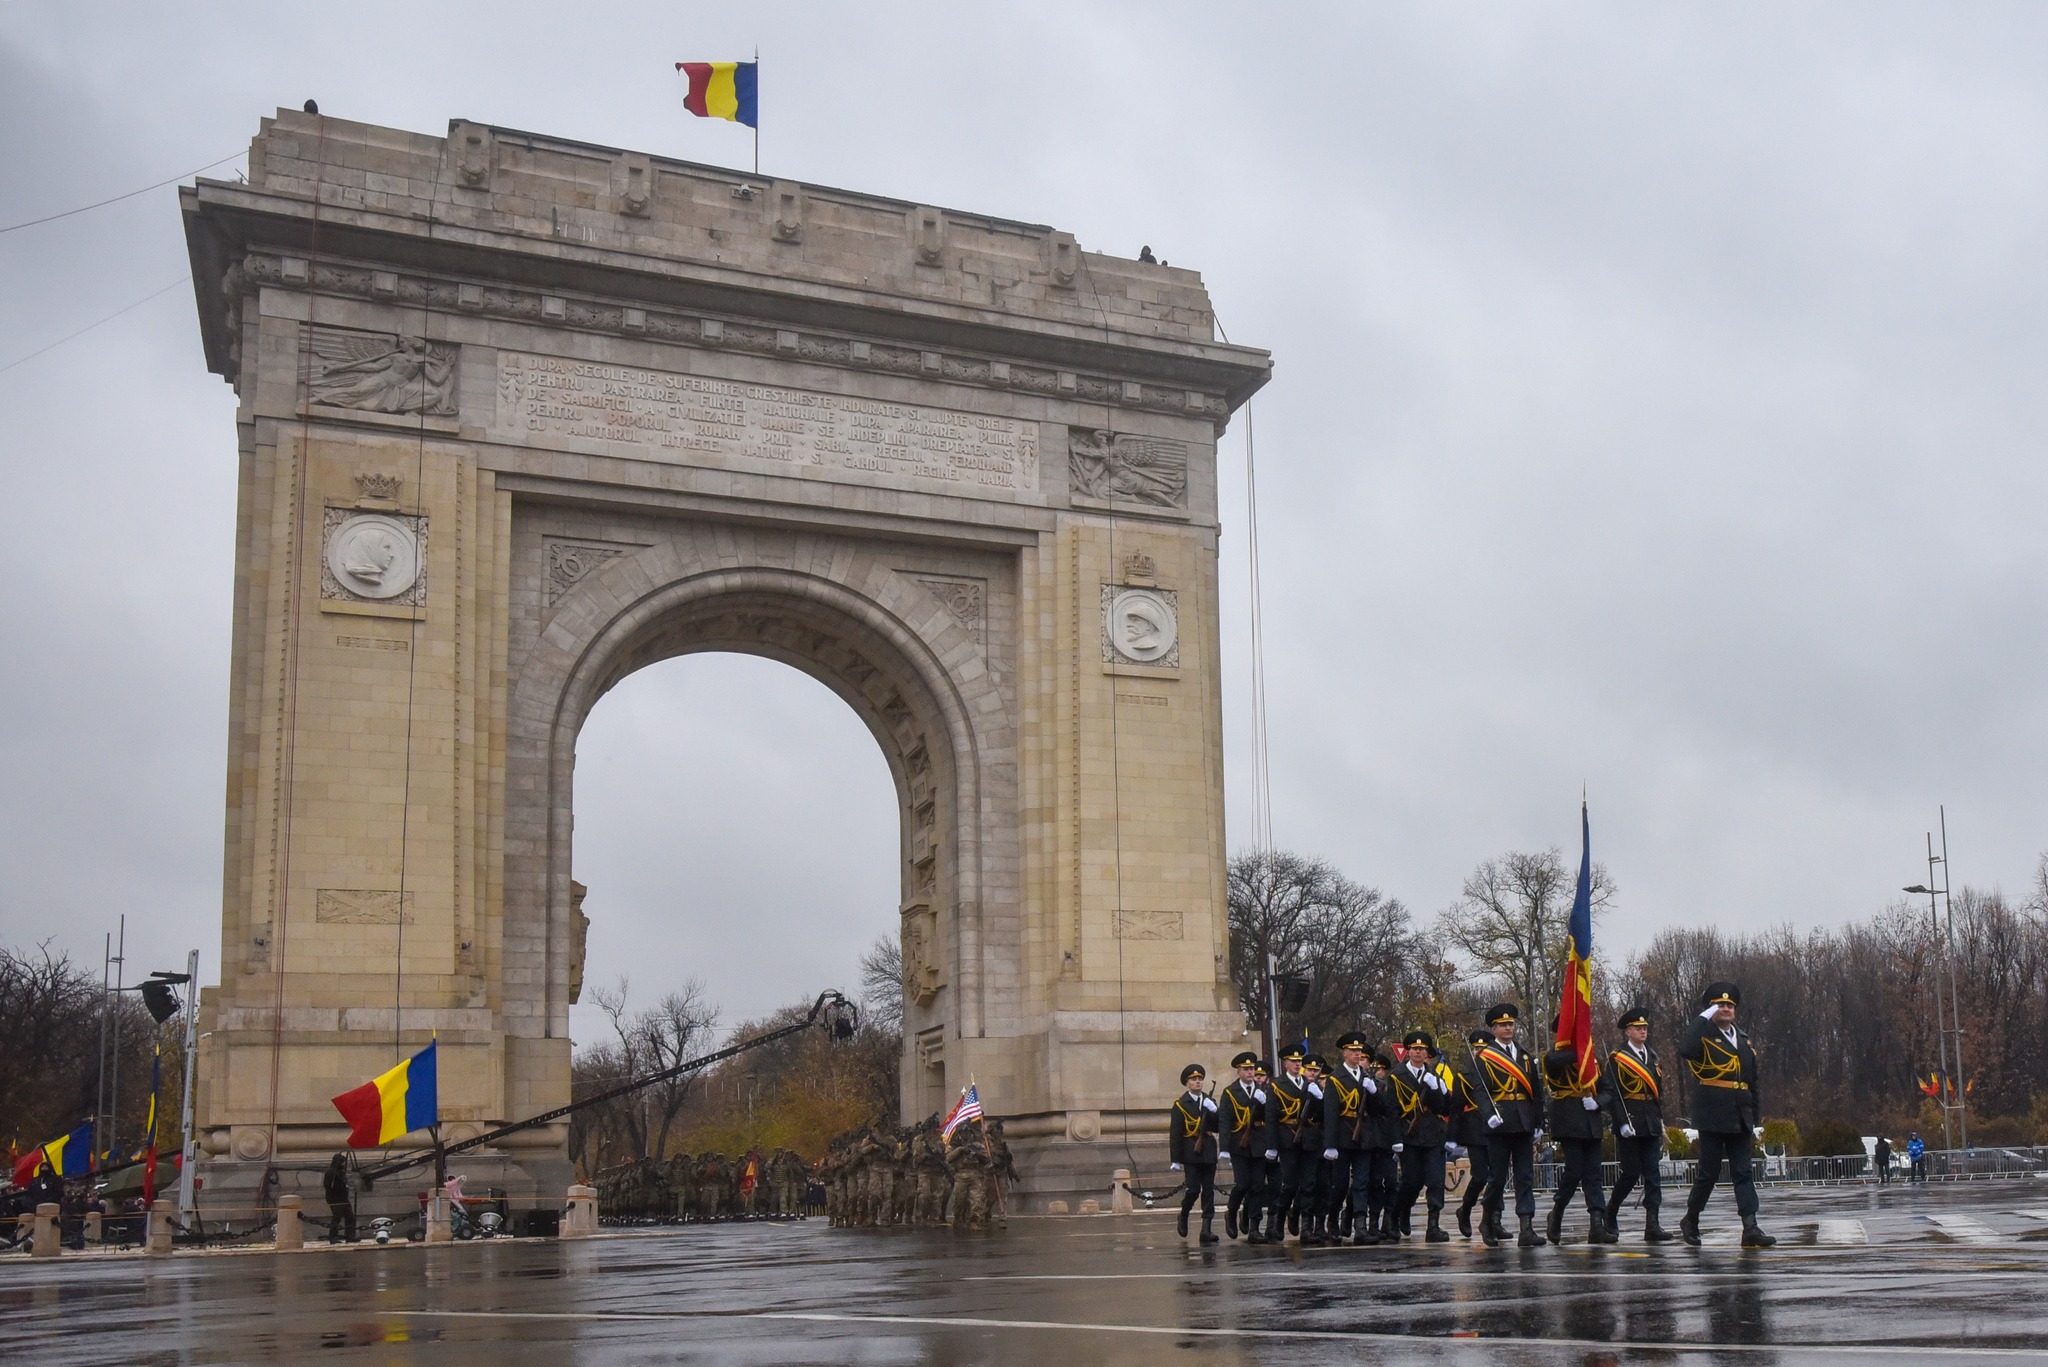 (ФОТО) Молдавские военные приняли участие в параде в Бухаресте по случаю Дня национального единения Румынии